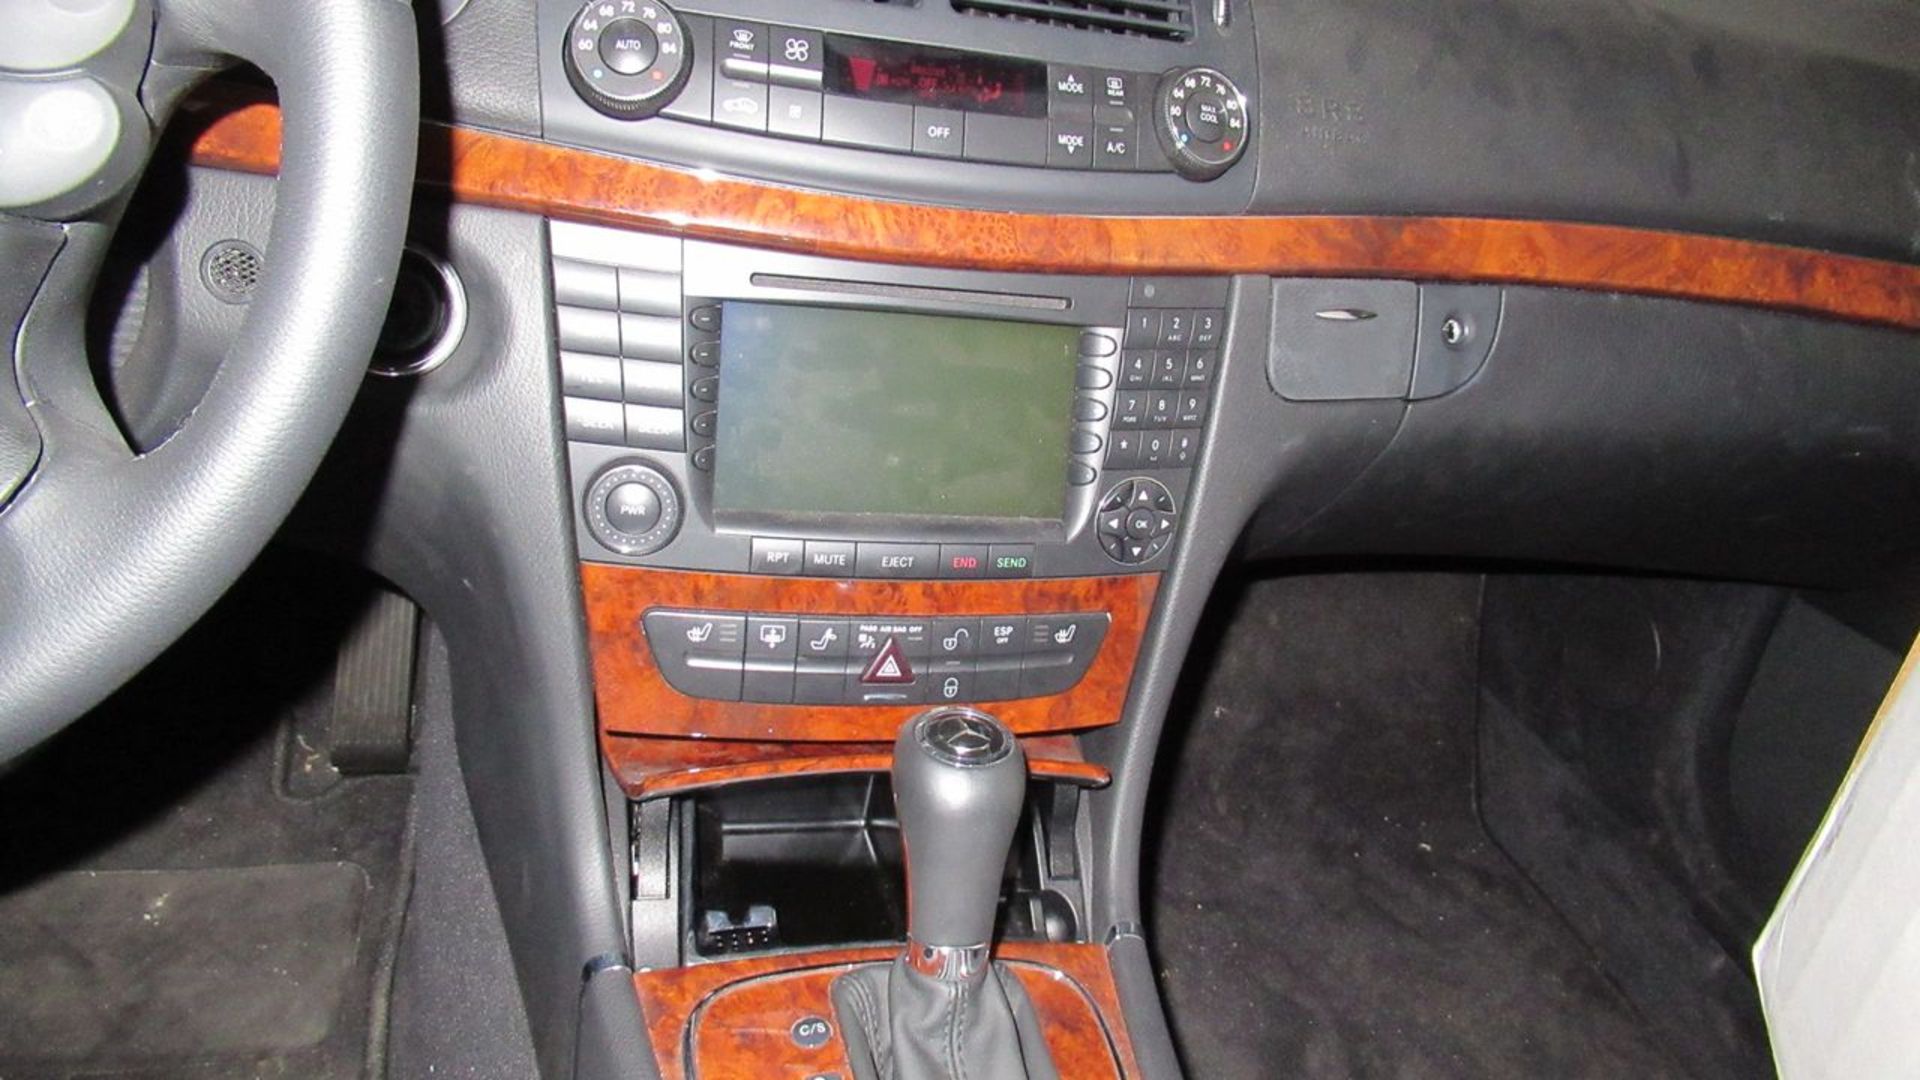 2007 - Mercedes-Benz E320CDI 4-Door Sport Sedan, VIN #: WDBUF22X77B056102; w/ BlueTec 3.0L V6 Diesel - Image 7 of 10